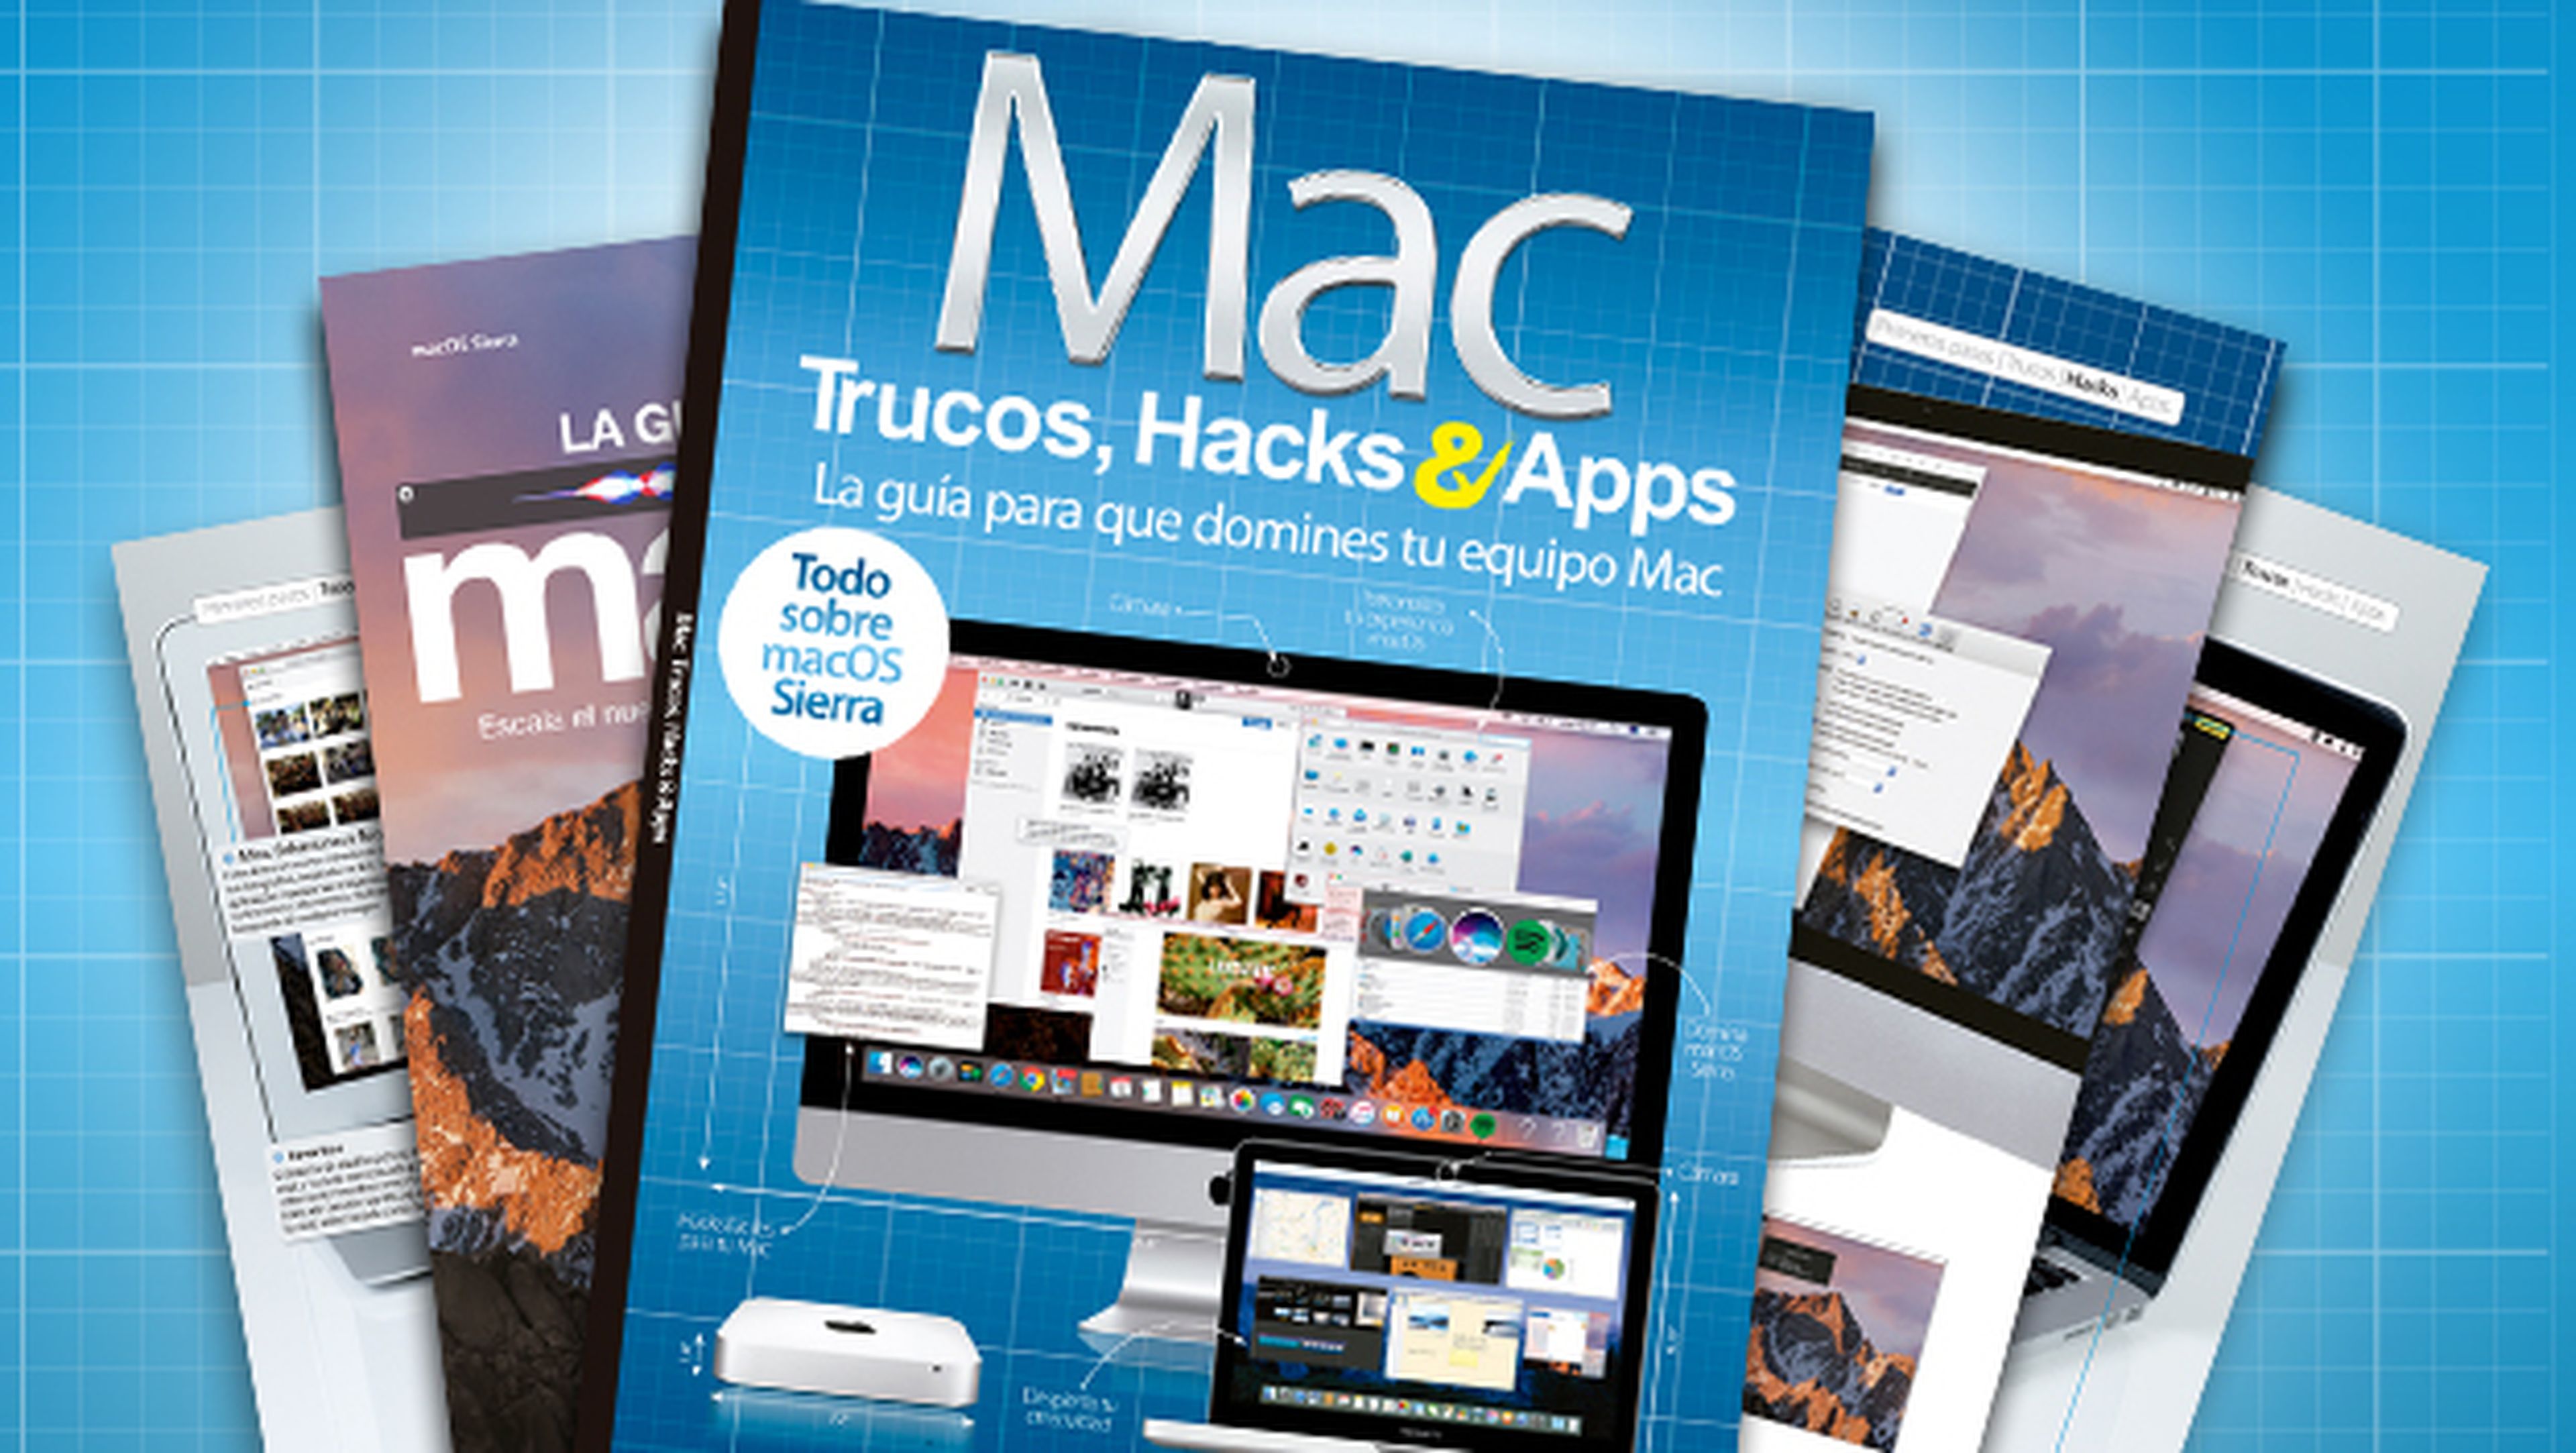 Mac Trucos, Hacks & Apps, saca todo el partido a tu iMac